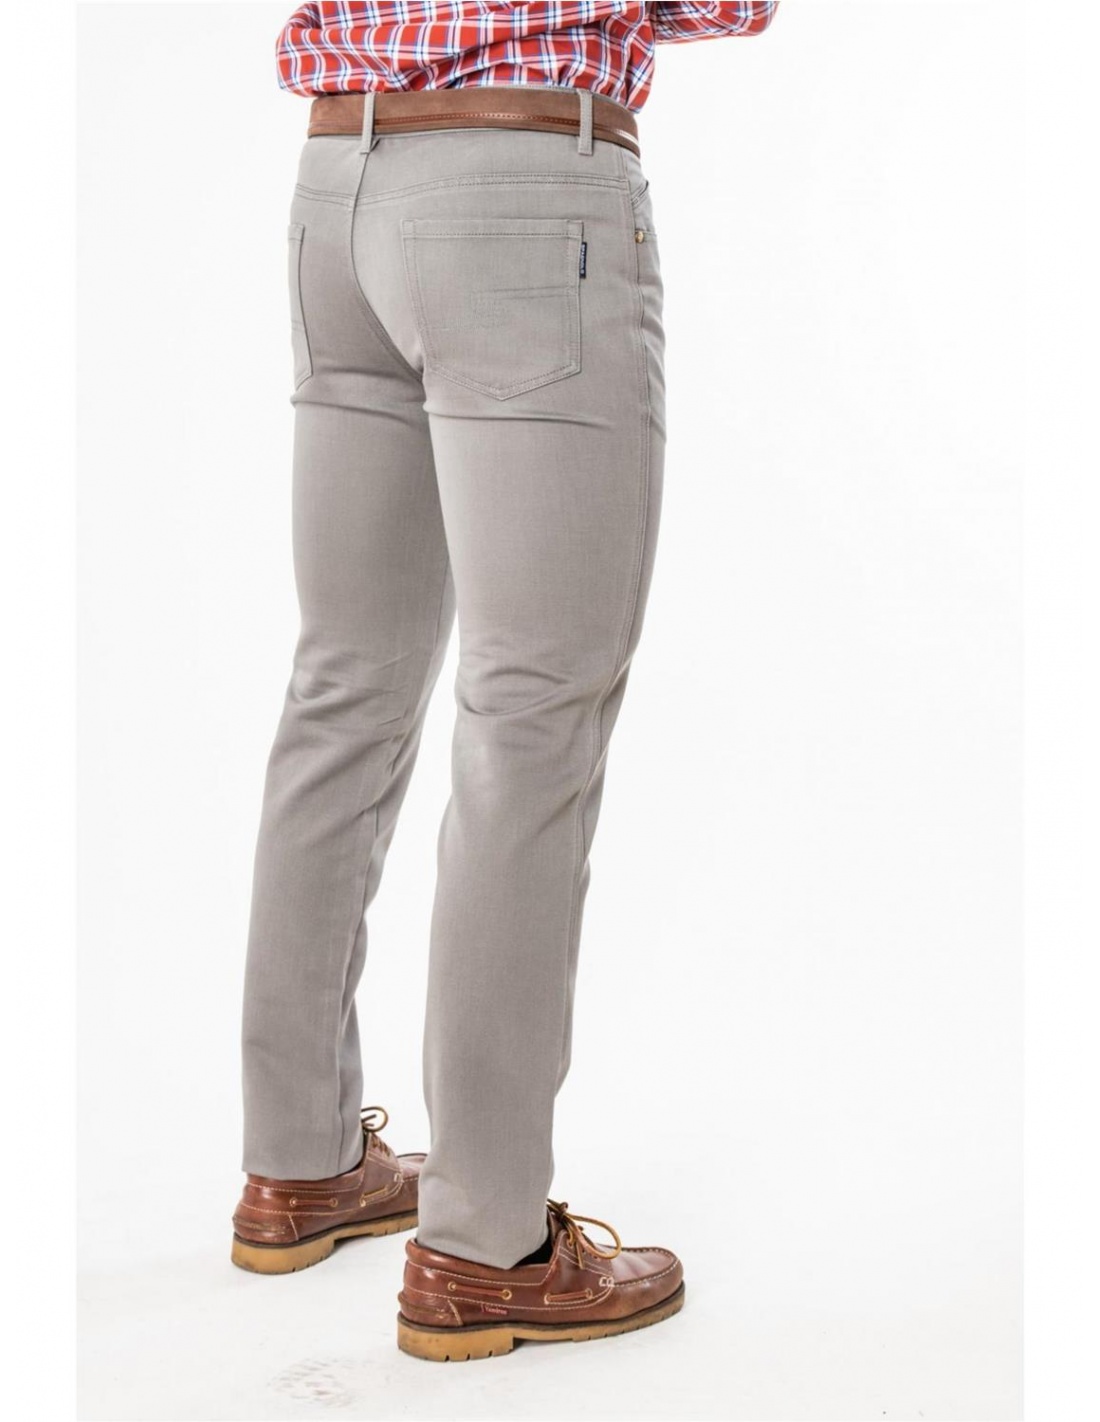 Pantalón sastre sarga Talla T. 1 Color Marron Oscuro (50)